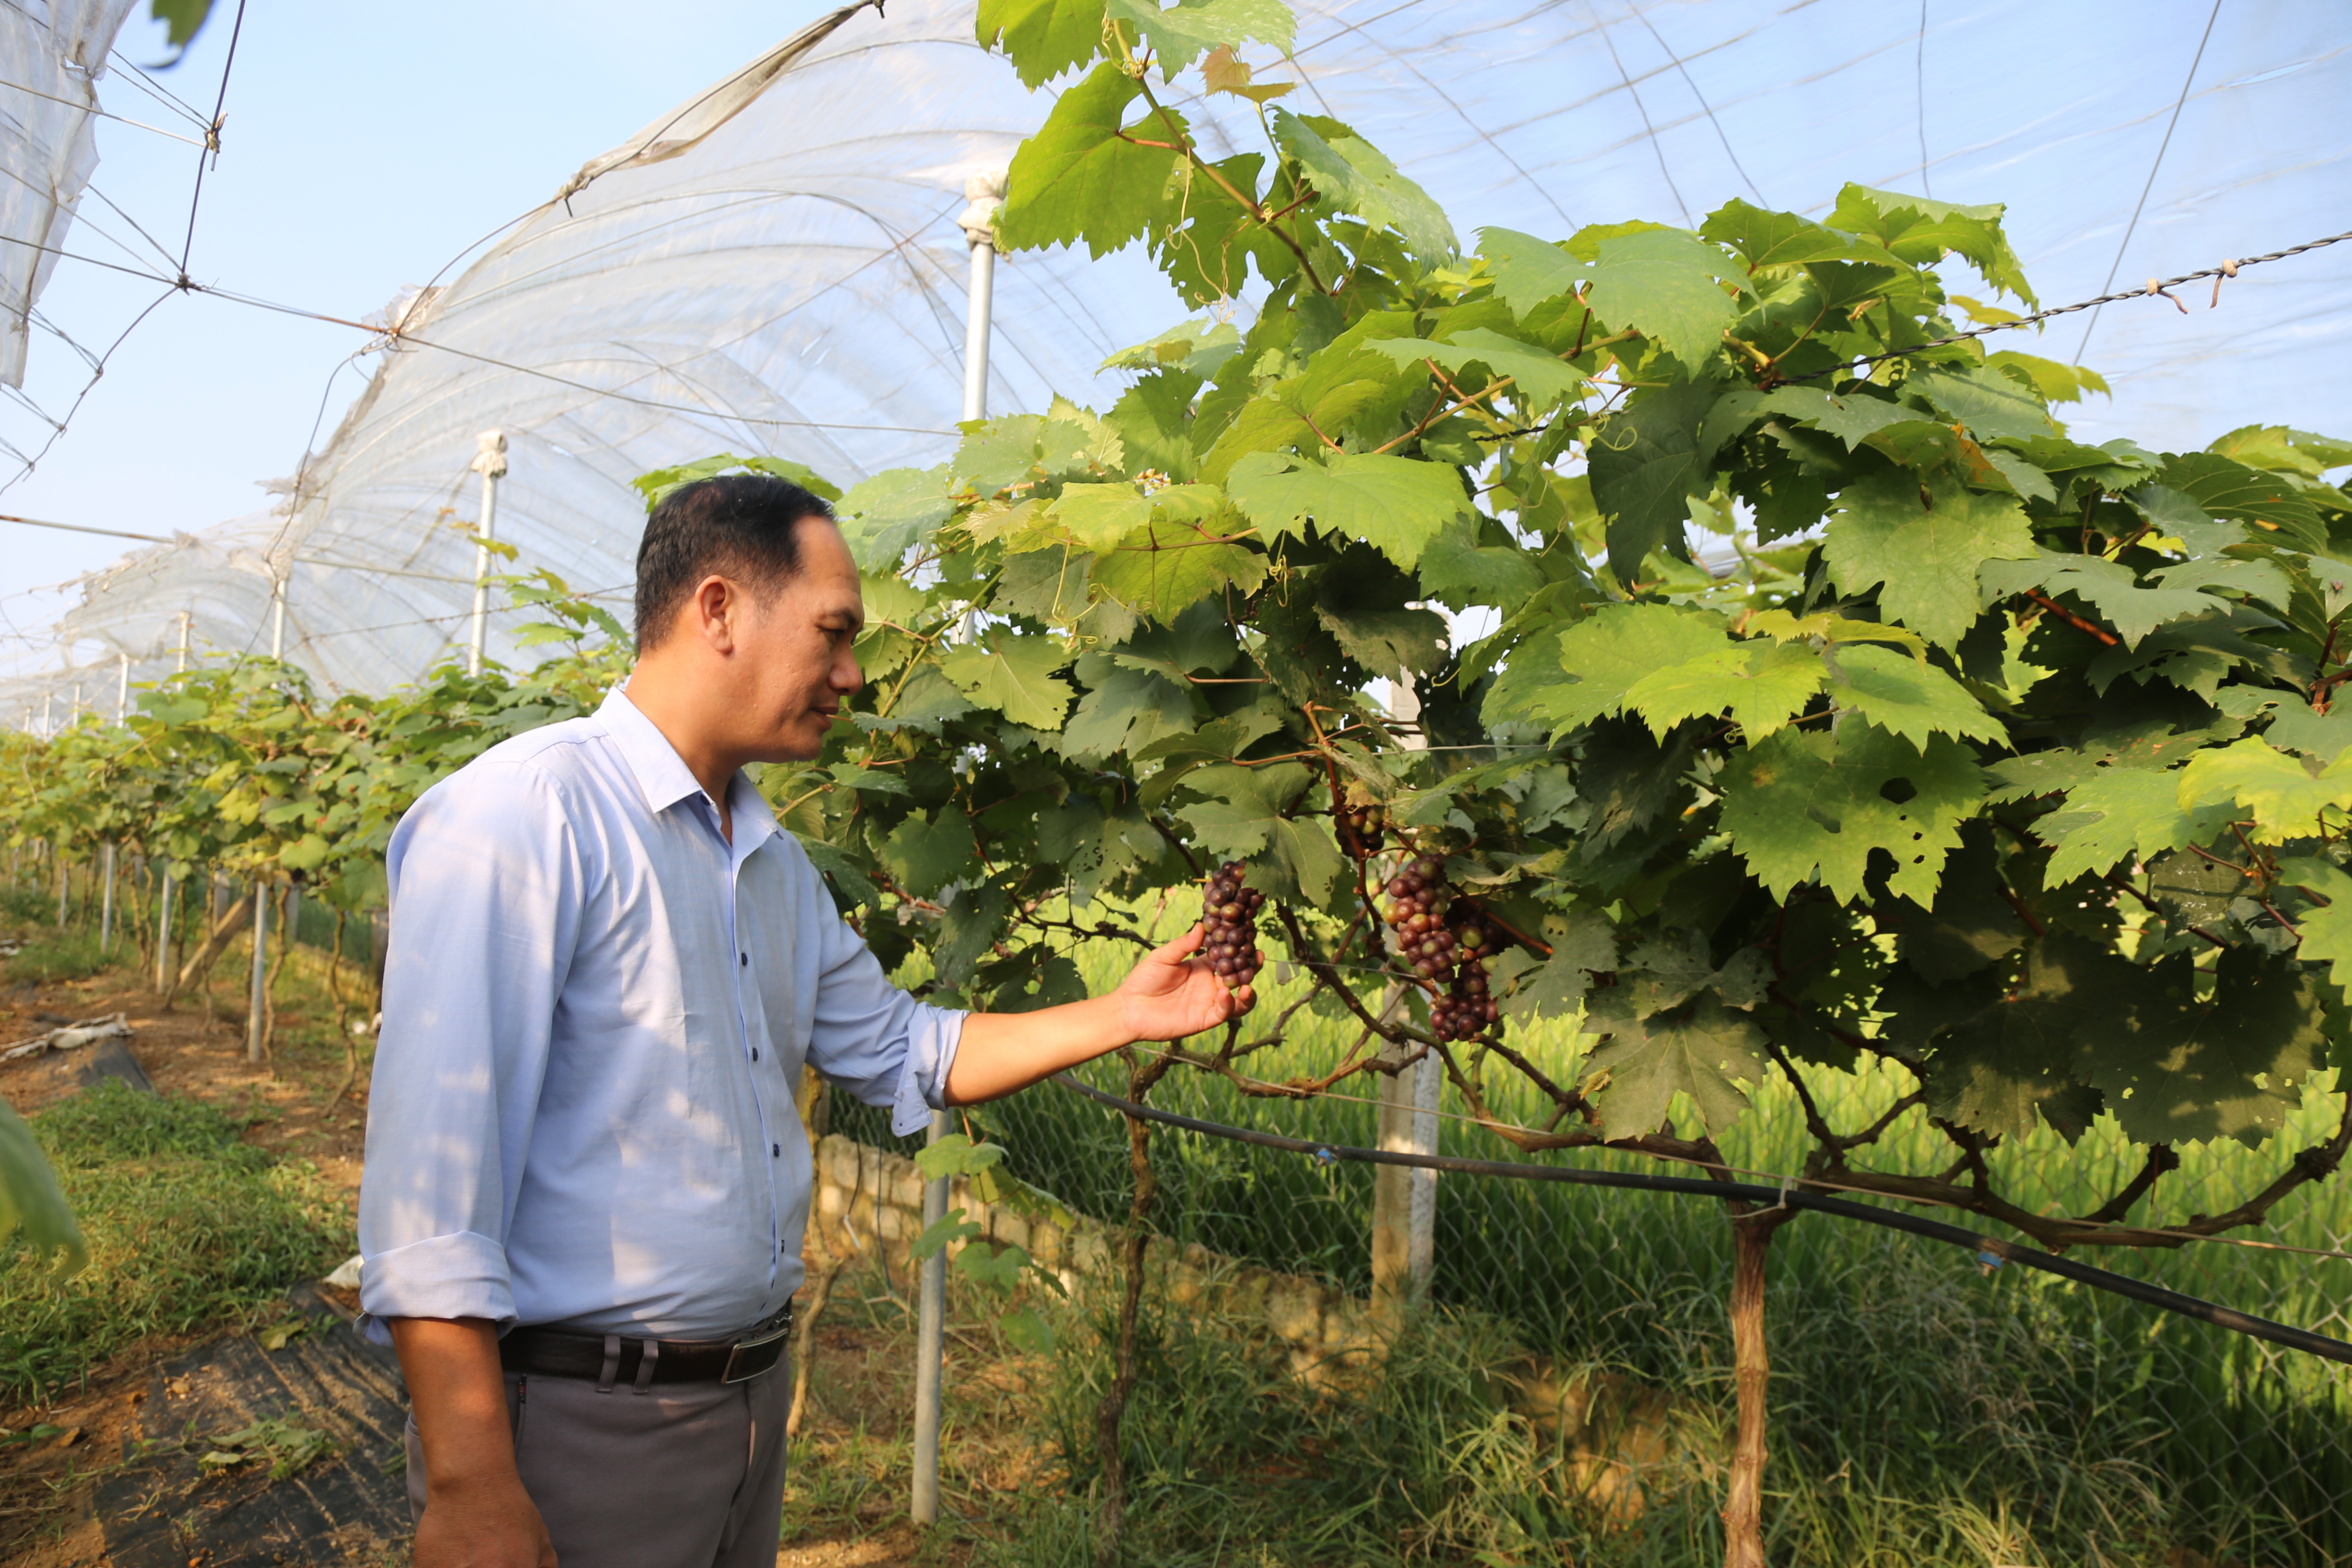 HTX Dịch vụ tổng hợp nông nghiệp Nghi Trung (Nghi Lộc) vay vốn tín dụng chính sách đầu tư trồng nho VietGAP. Ảnh: Thu Huyền